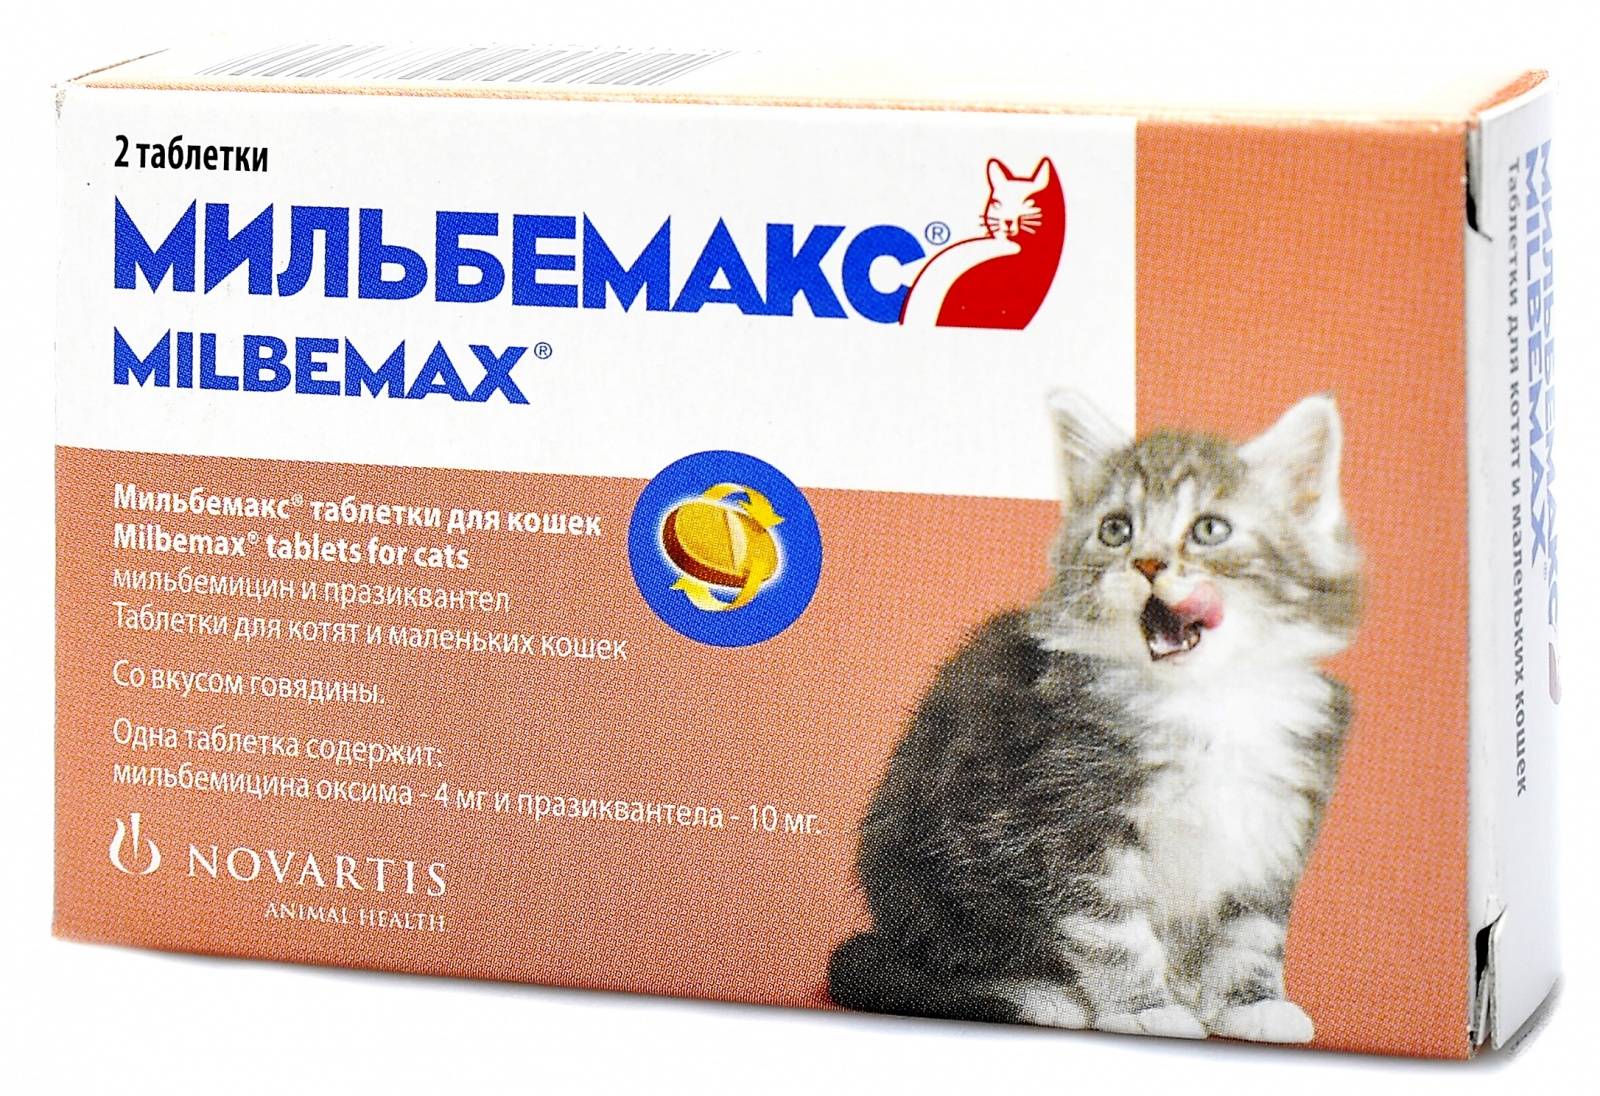 Мильбемакс для кошек: когда применяется, как давать, дозировка препарата